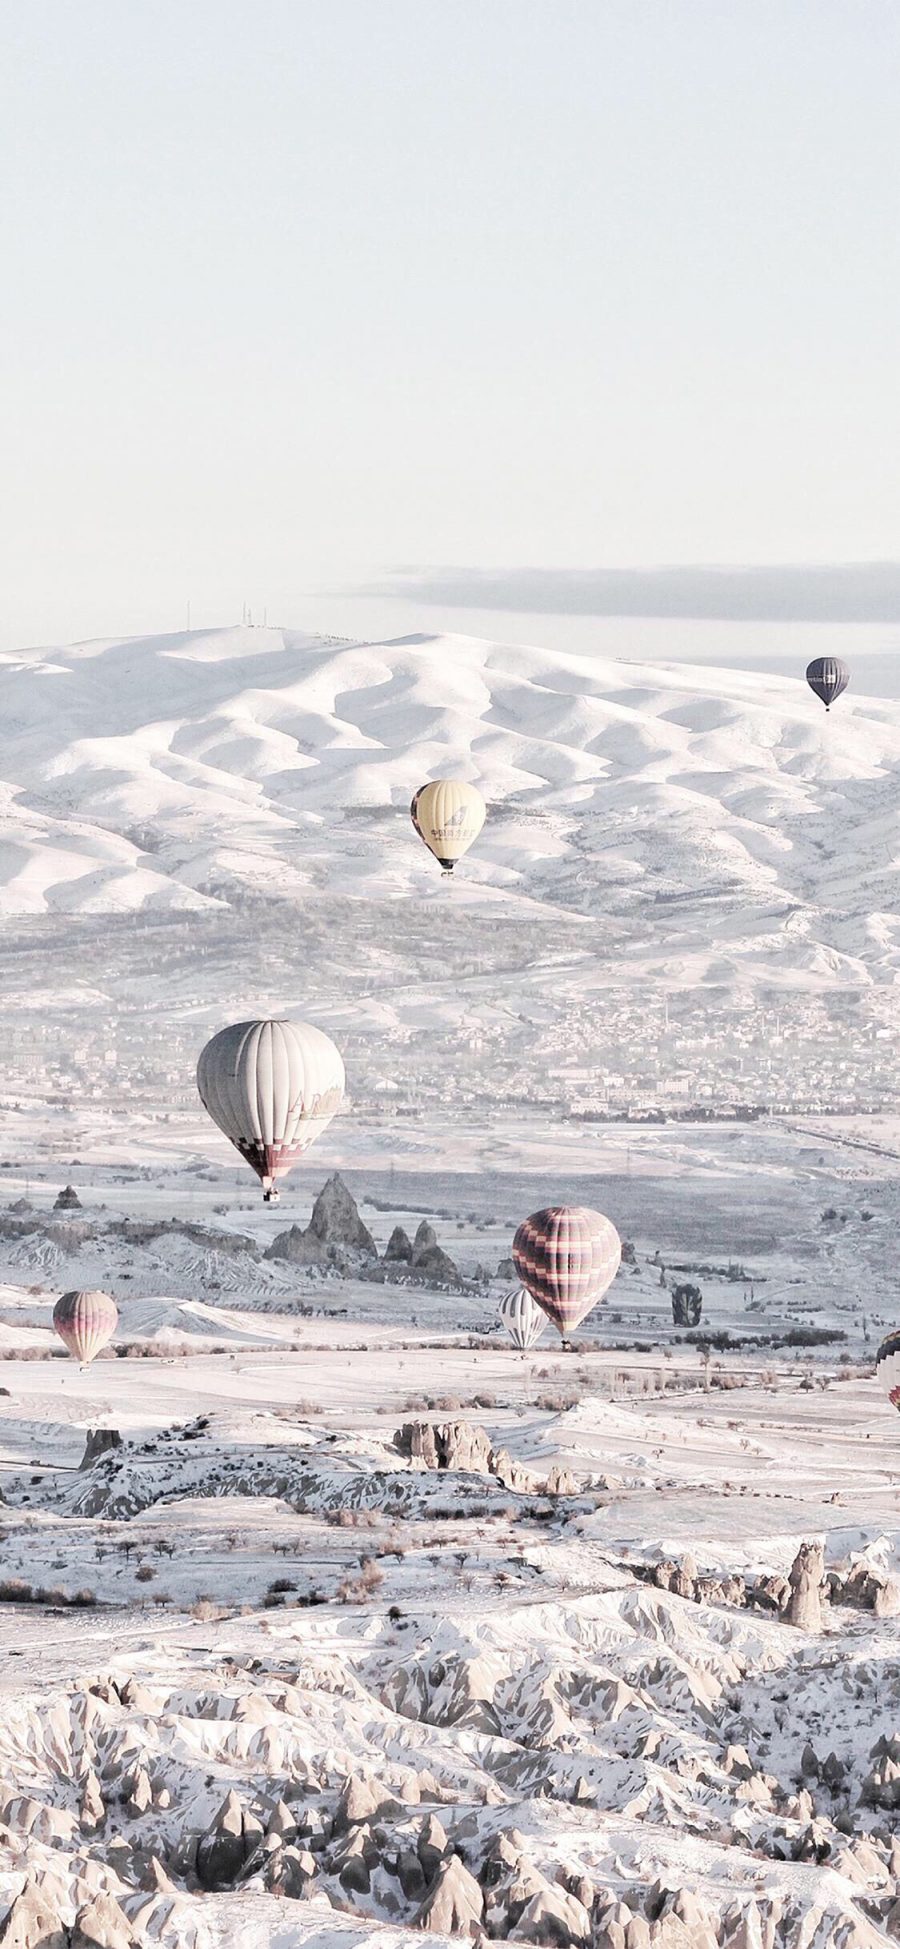 [2436×1125]土耳其 浪漫 雪景 热气球 苹果手机壁纸图片